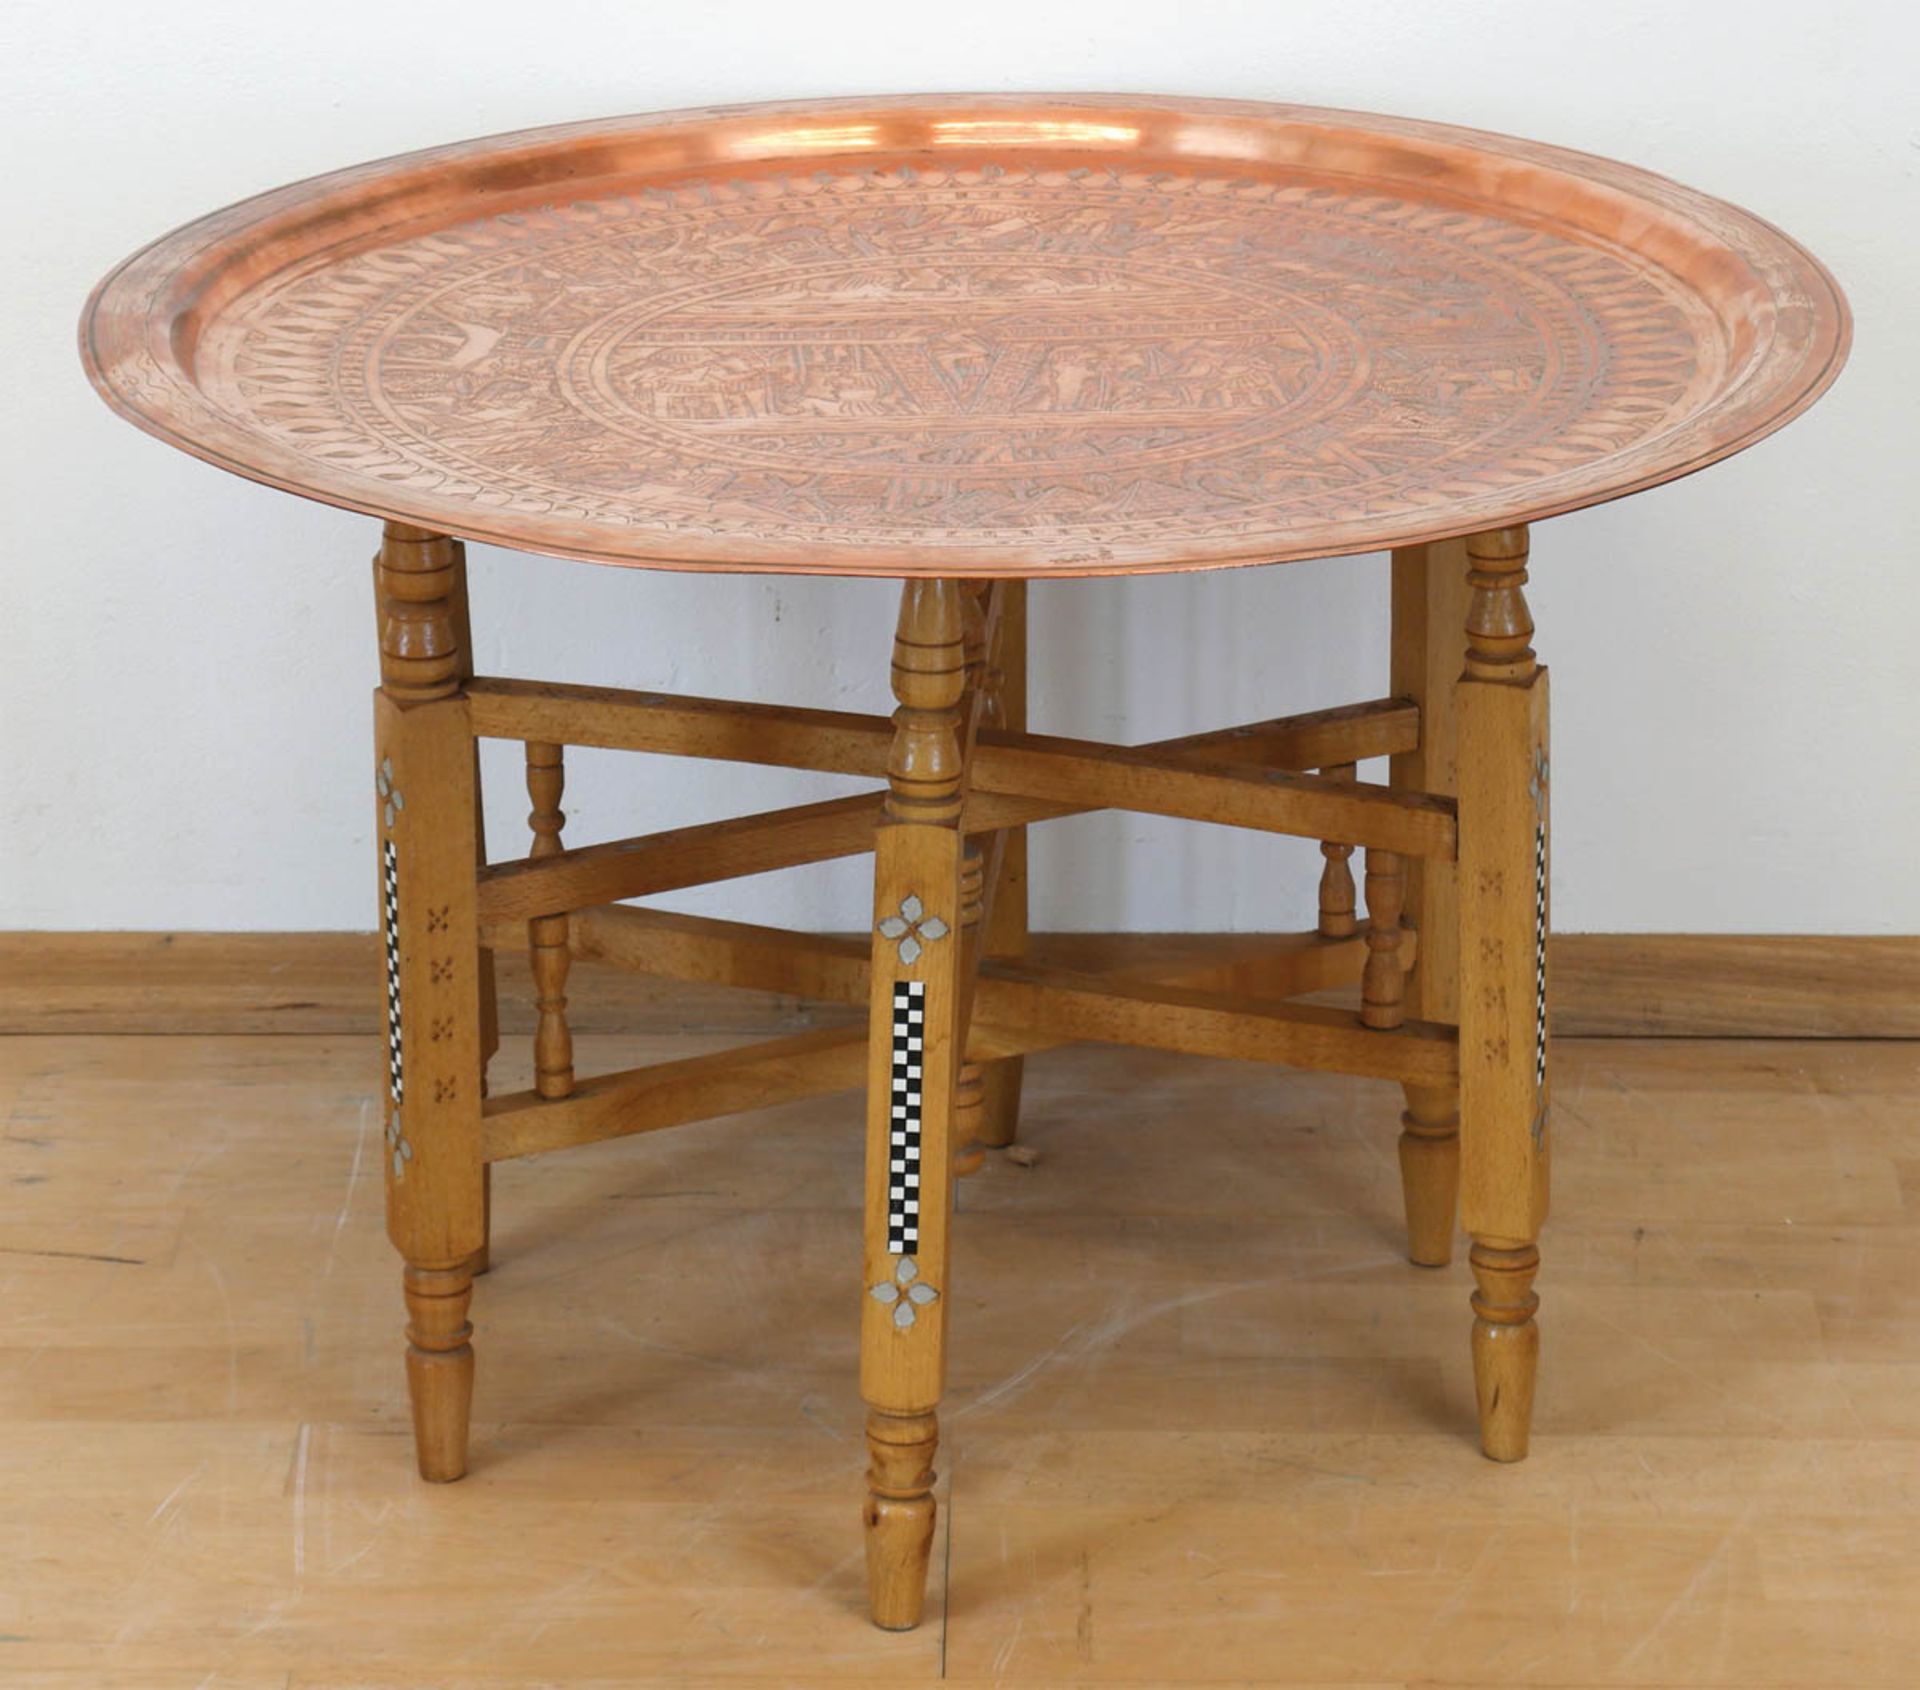 Tablett-Tisch, klappbares, sternförmig ausstellbares Fußgestell aus Holz, aufgesetztes Tablett aus